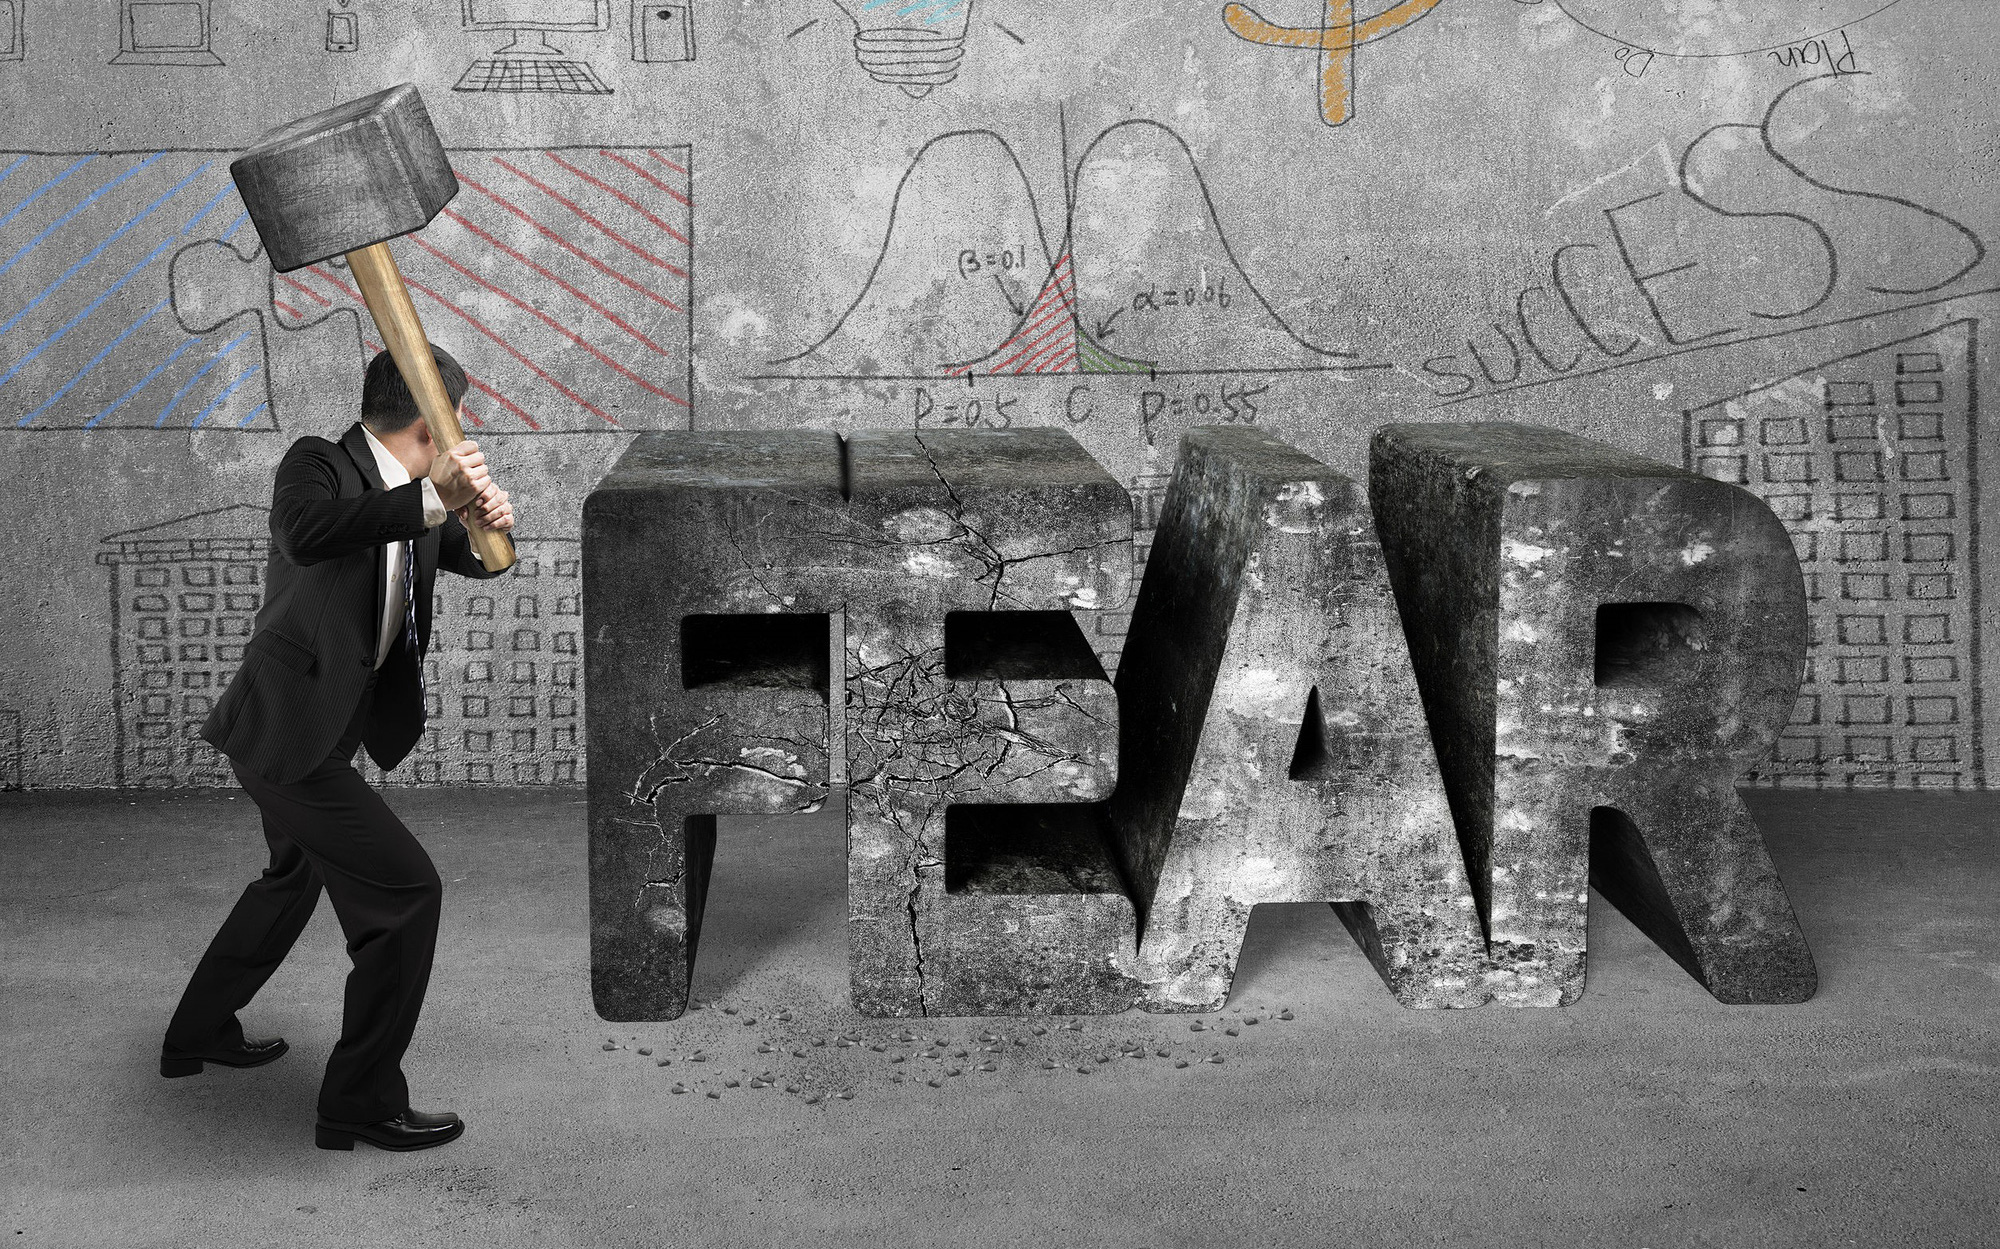 3 nỗi sợ hãi đang vô hình kìm hãm chúng ta: Không tự mình vượt qua thì sự nghiệp dậm chân tại chỗ, nghèo mãi hoàn nghèo, bế tắc chồng bế tắc mà không hiểu tại sao